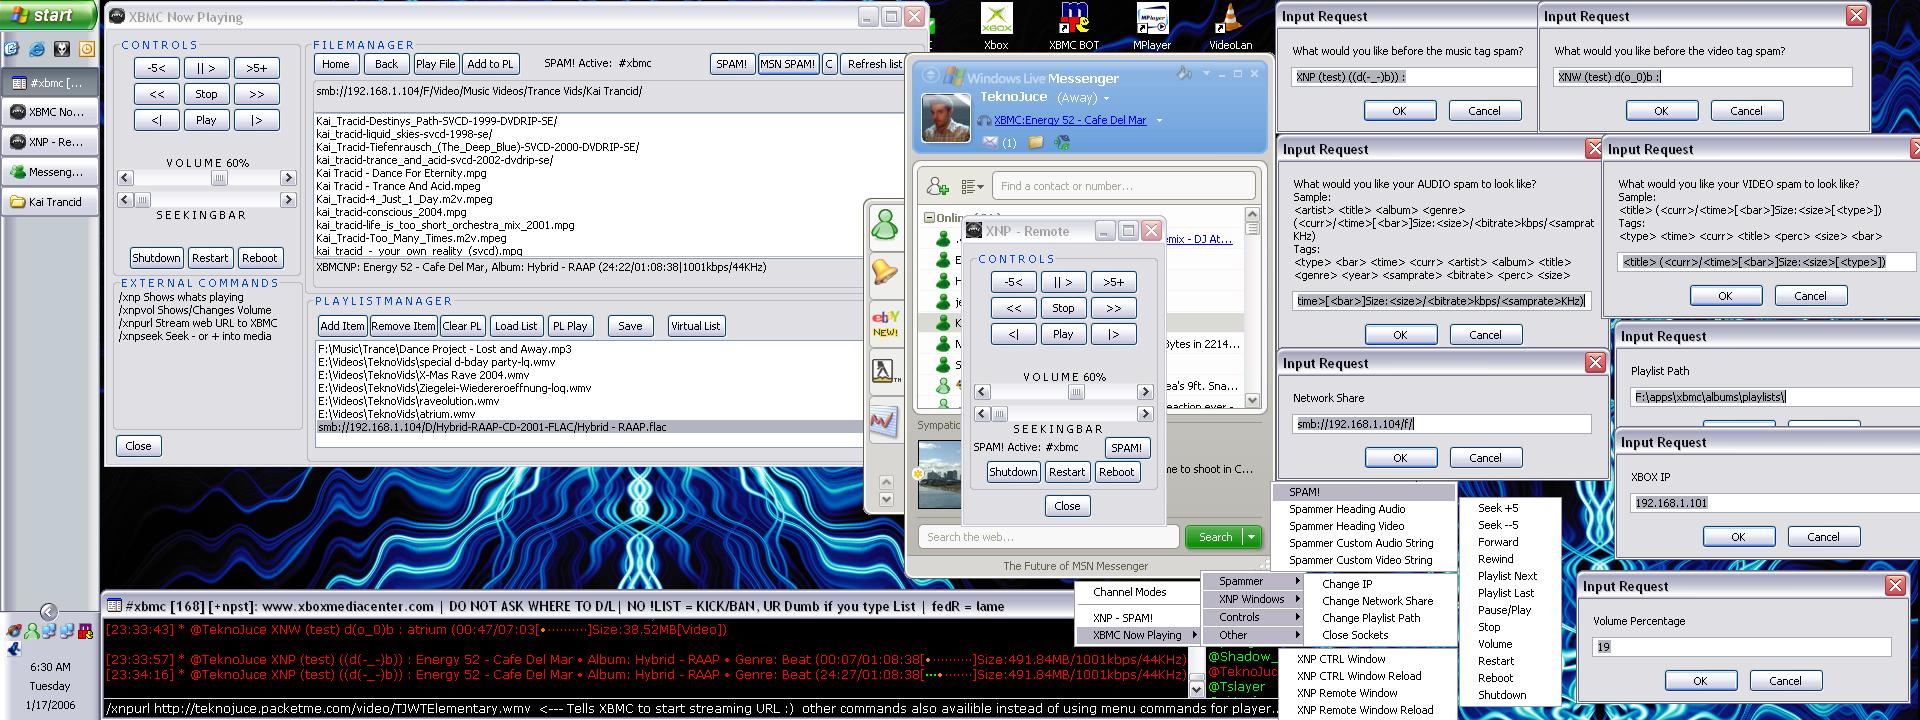 File:Xnpscreenshotsm(2006JAN17).jpg